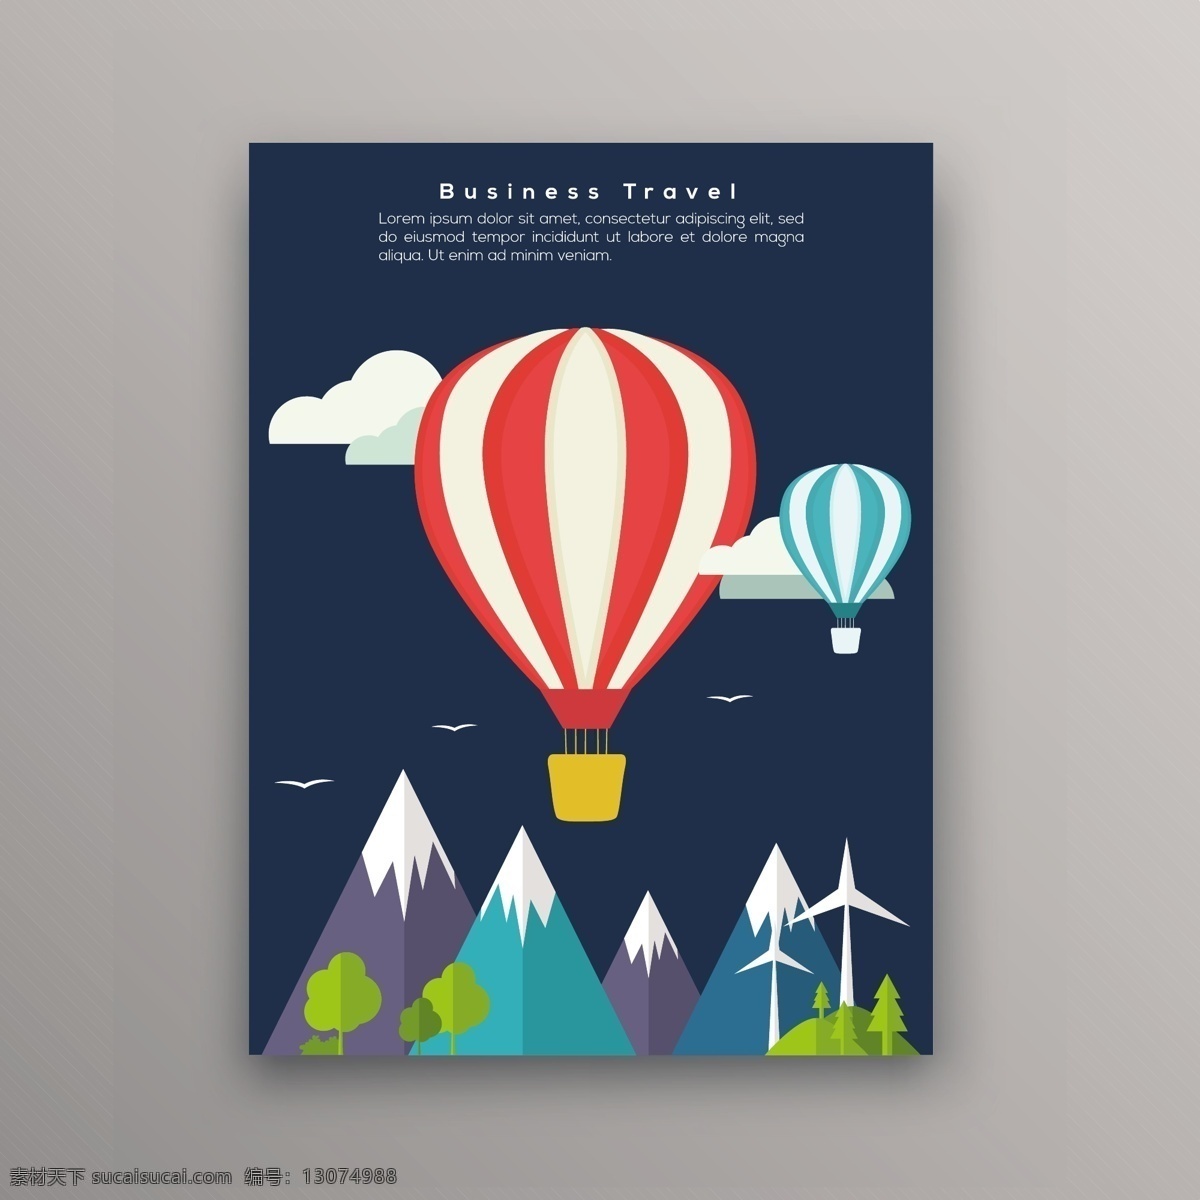 商务旅行背景 背景 名片 宣传册 传单 海报 商务 旅游 颜色 工作 气球 平面 丰富多彩 平面设计 山 热气球 假期 空气